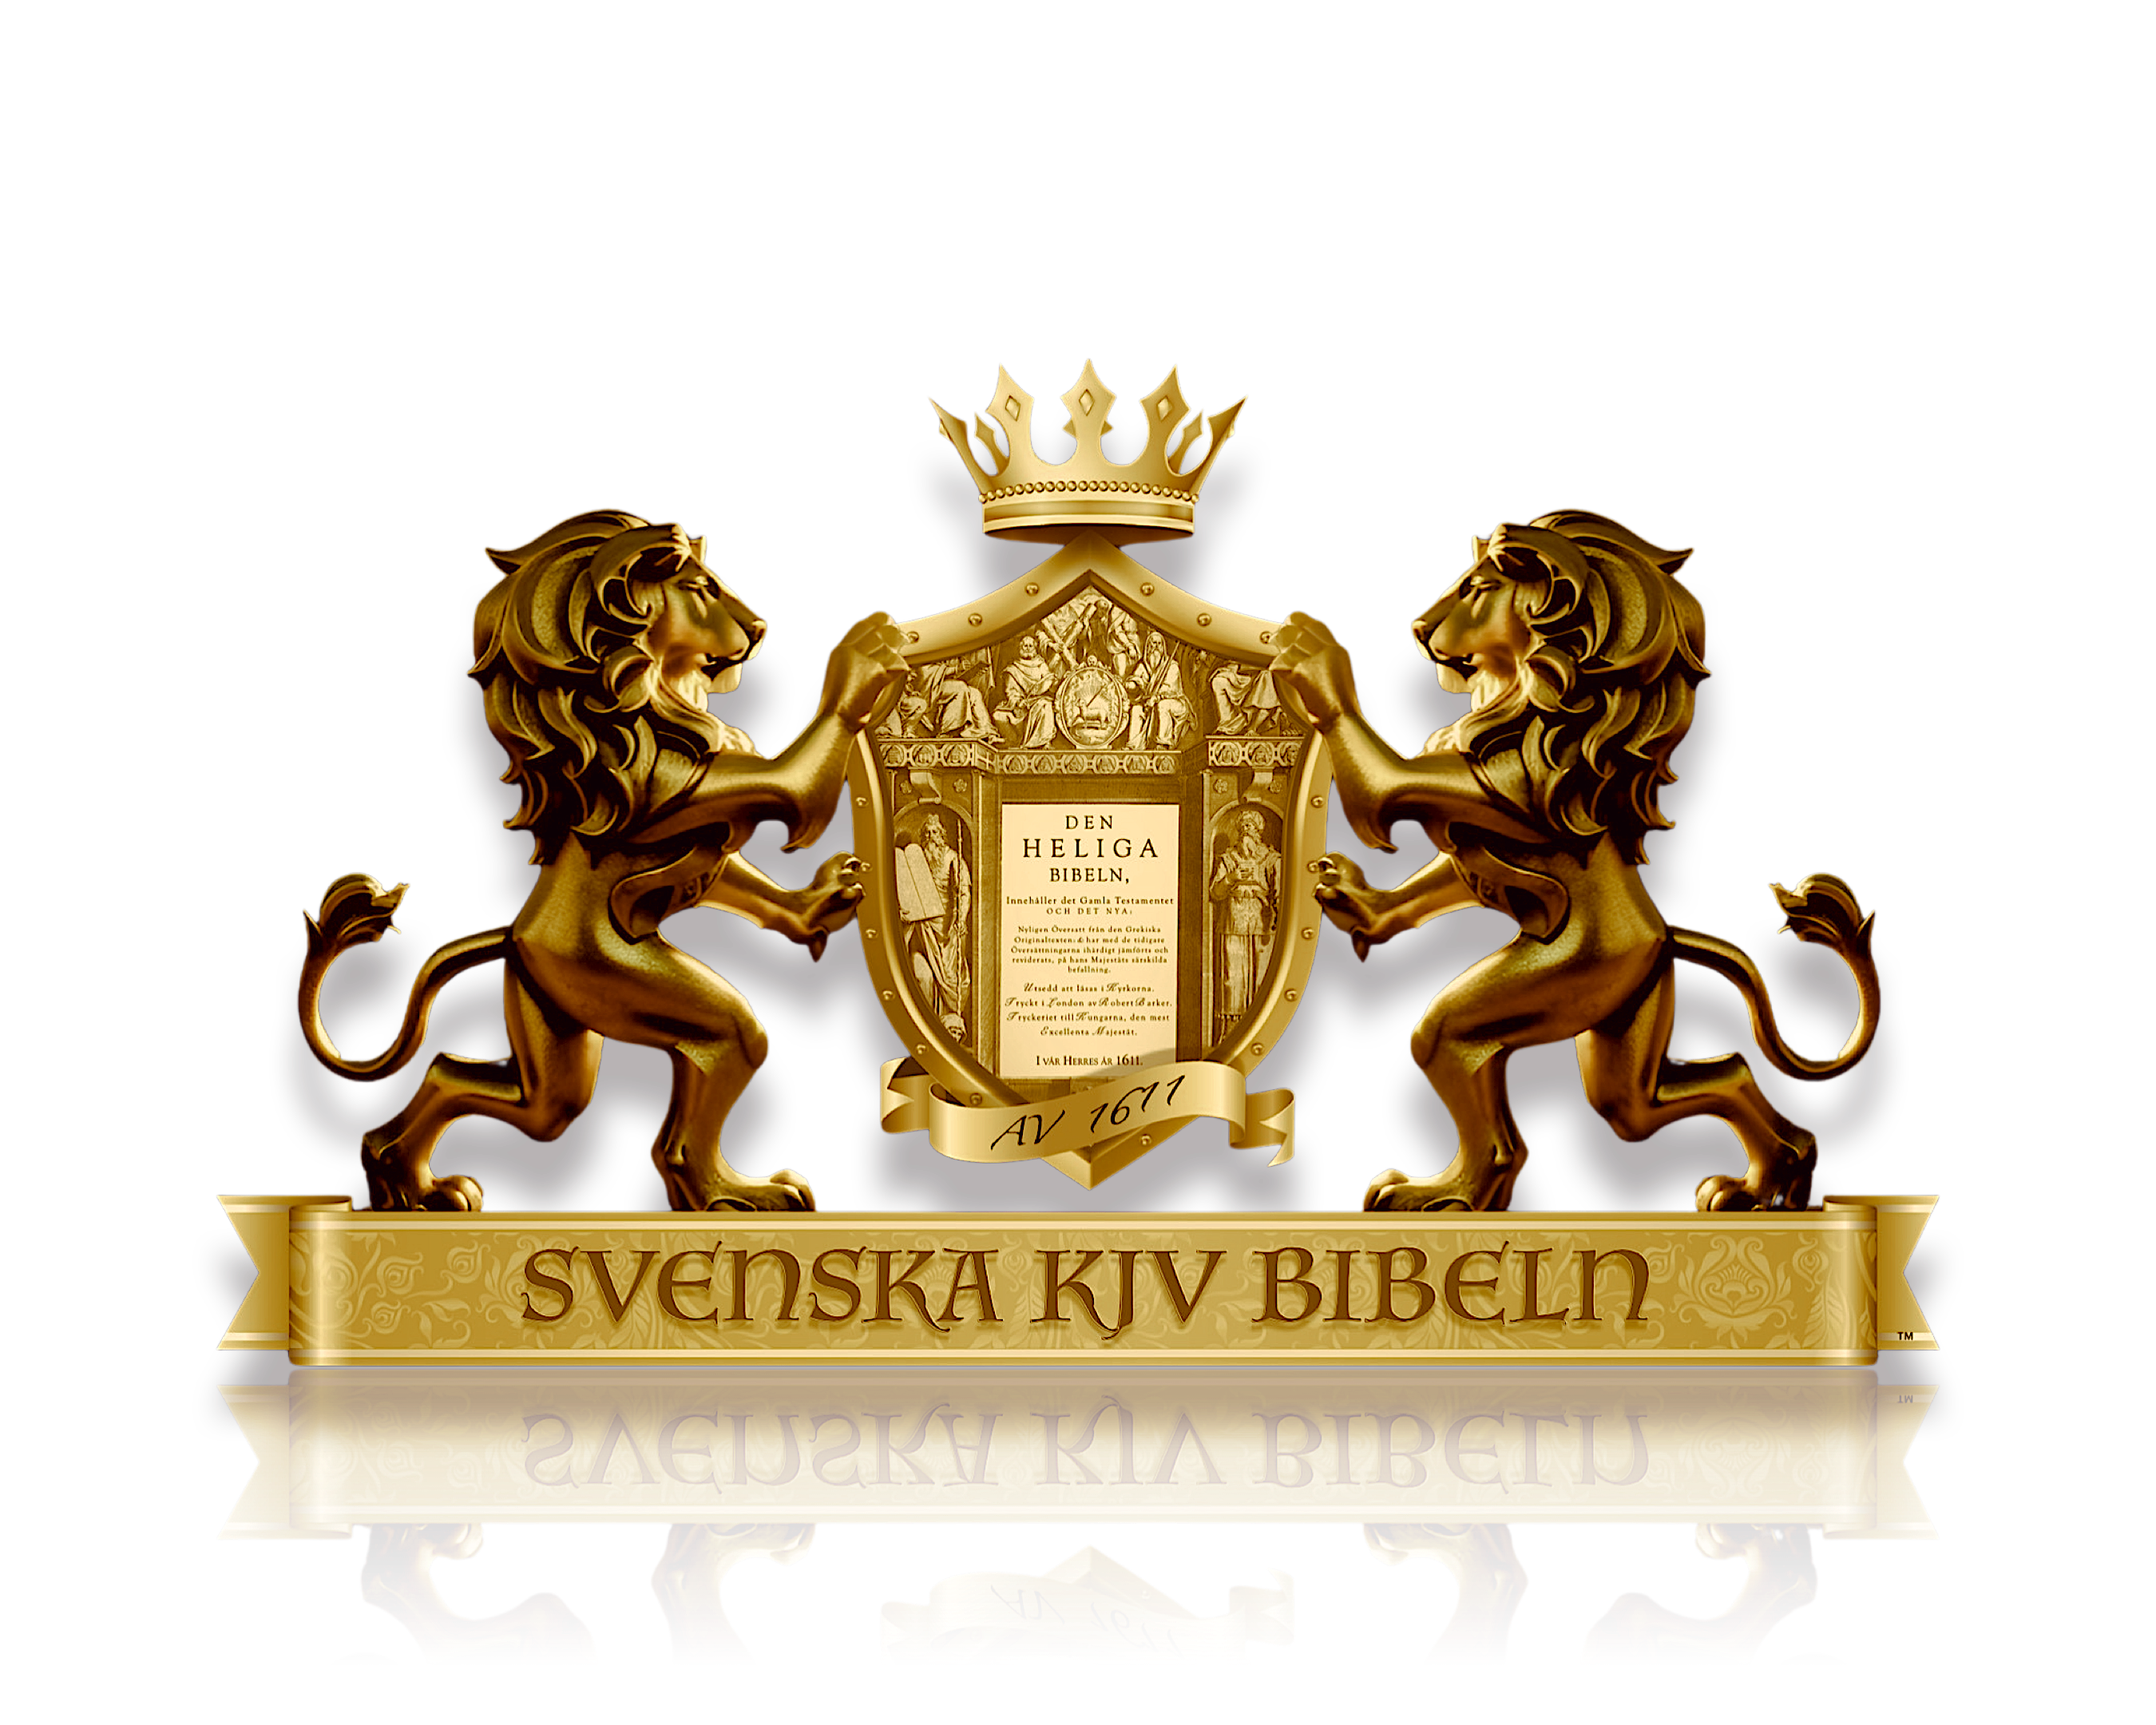 Svenska KJV Bibeln logo